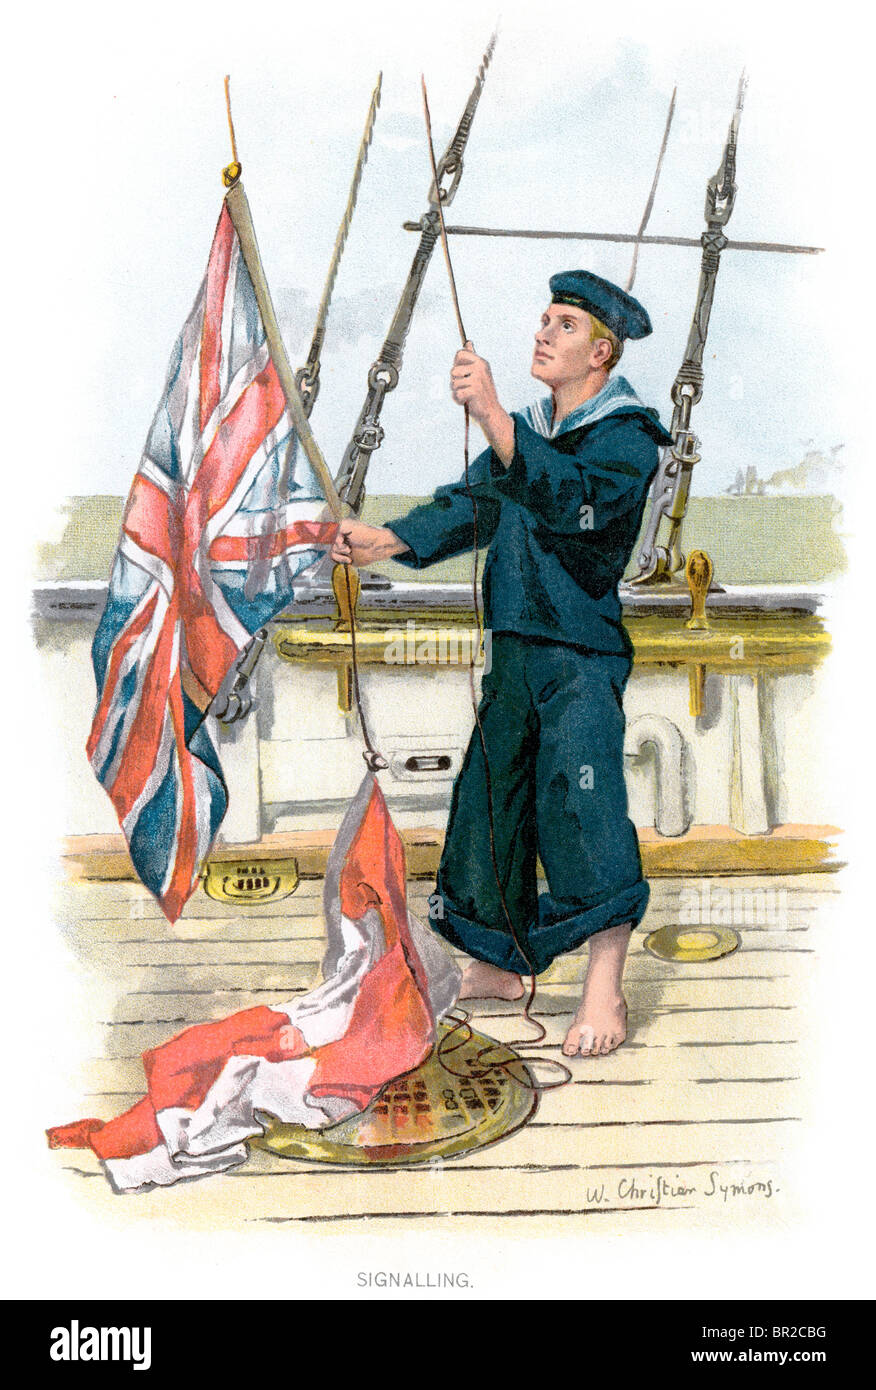 Un marin de la Marine royale de la période victorienne sensibiliser l'Union Jack flag de signal. Symons (99) Banque D'Images